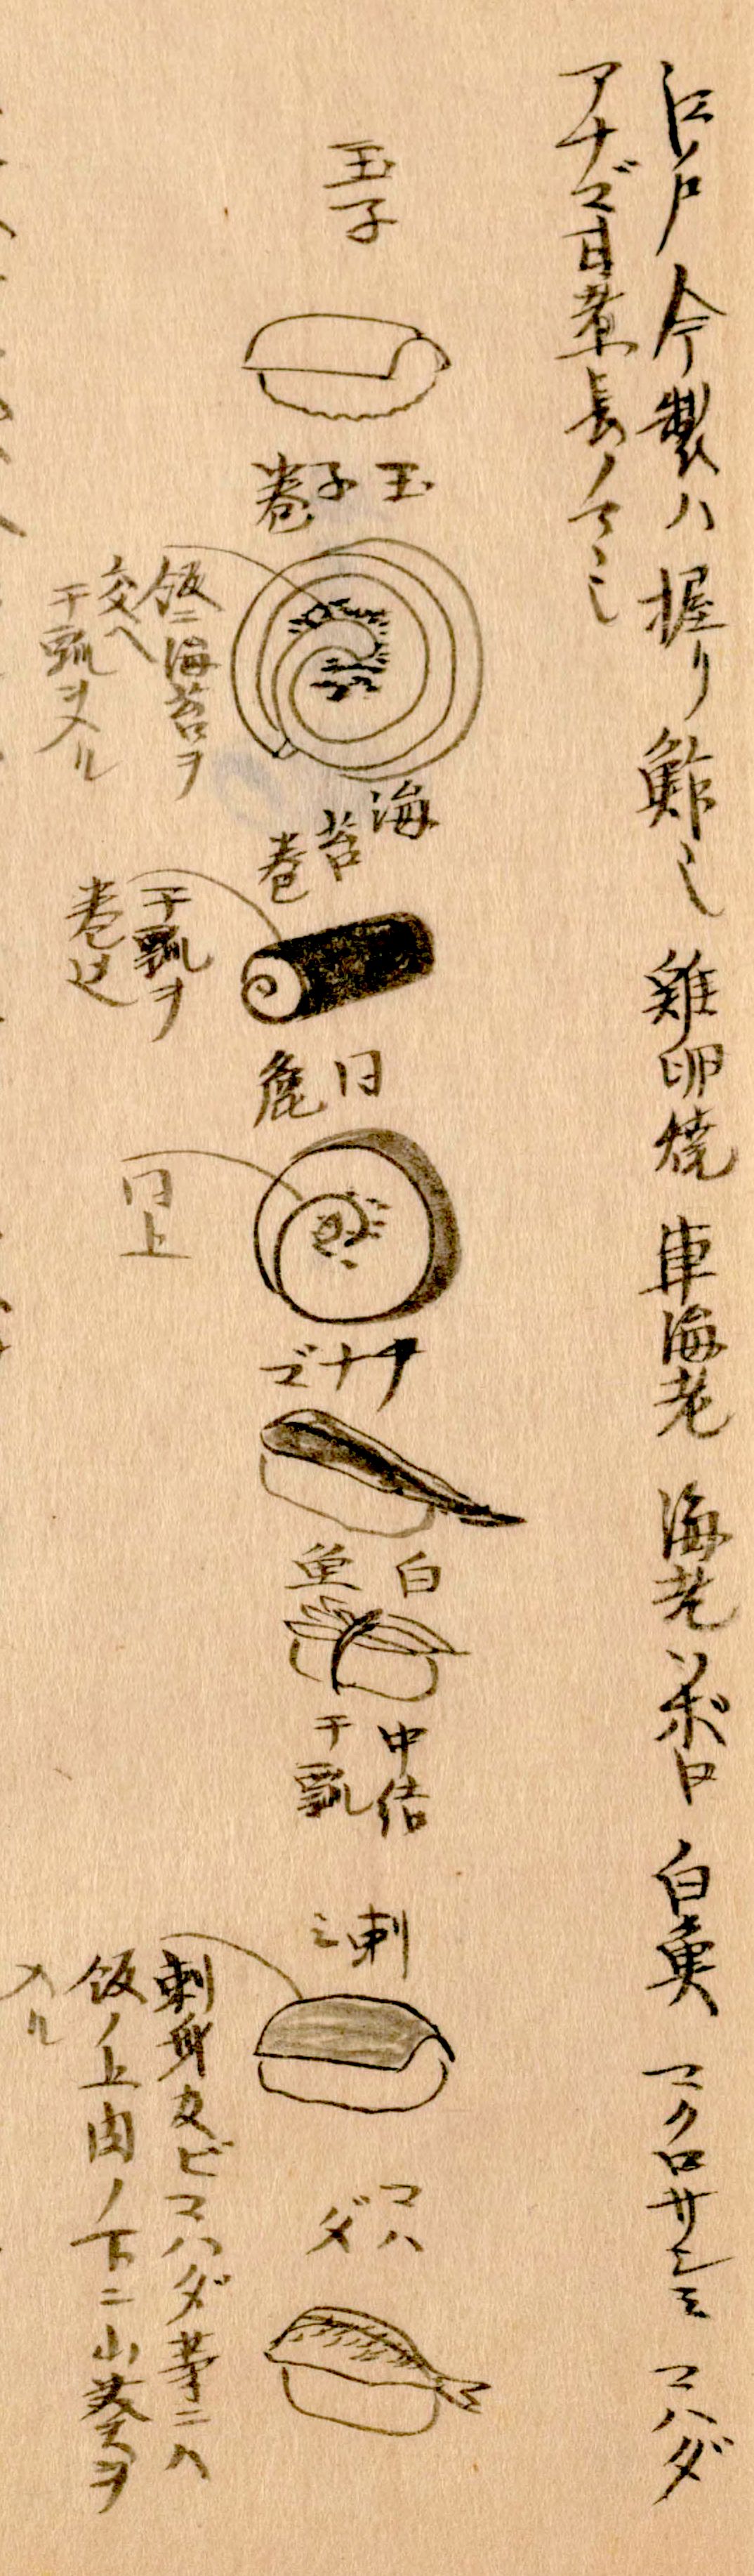 La technique du nigirizushi illustrée dans le Morisada mankô (« Encyclopédie de Morisada »). De haut en bas : tamagoyaki (omelette roulée), tamagomaki (lanières de courges kanpyô enveloppées dans du tamagoyaki), norimaki garni de kanpyô, une coupe transversale de norimaki, anago (congre), shirauo (poisson des glaces) enveloppé de kanpyô, sashimi de thon et kohada (gésiers d’alose). (Avec l'aimable autorisation de la Bibliothèque nationale de la Diète).